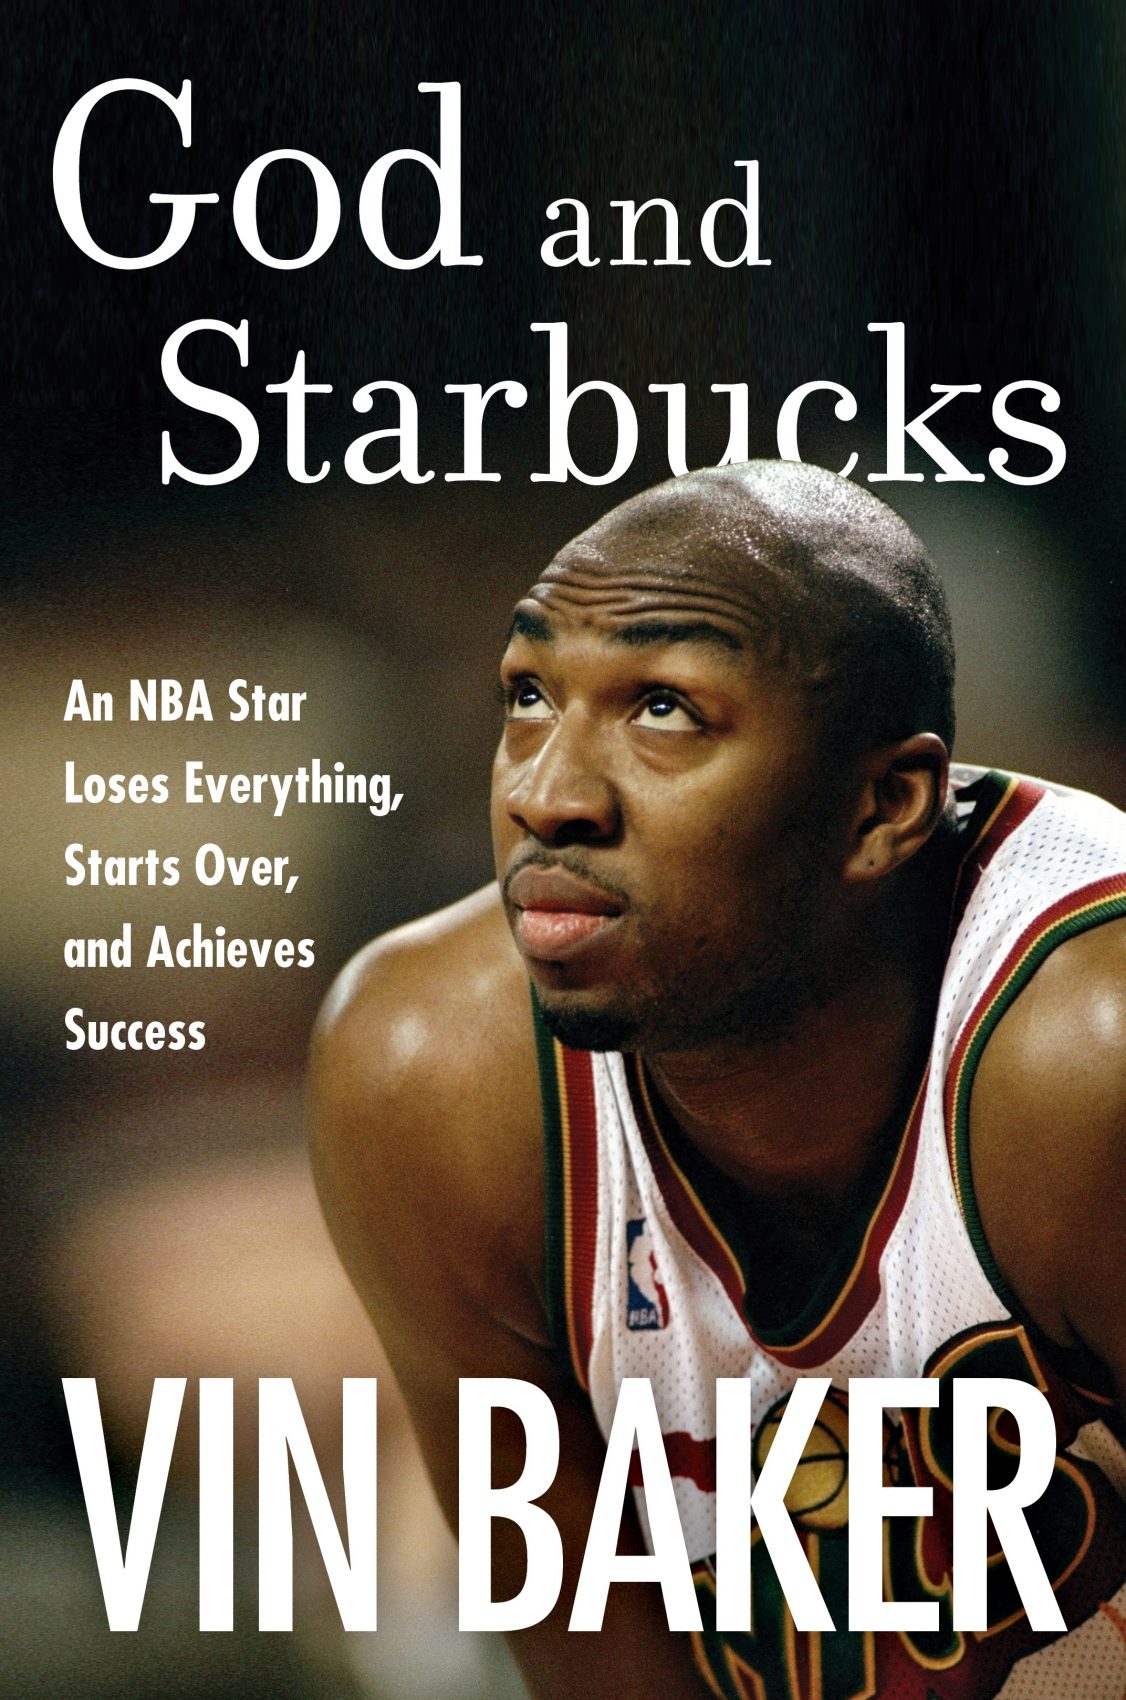 1996 NBA All-Star Game: Vin Baker Action Portrait